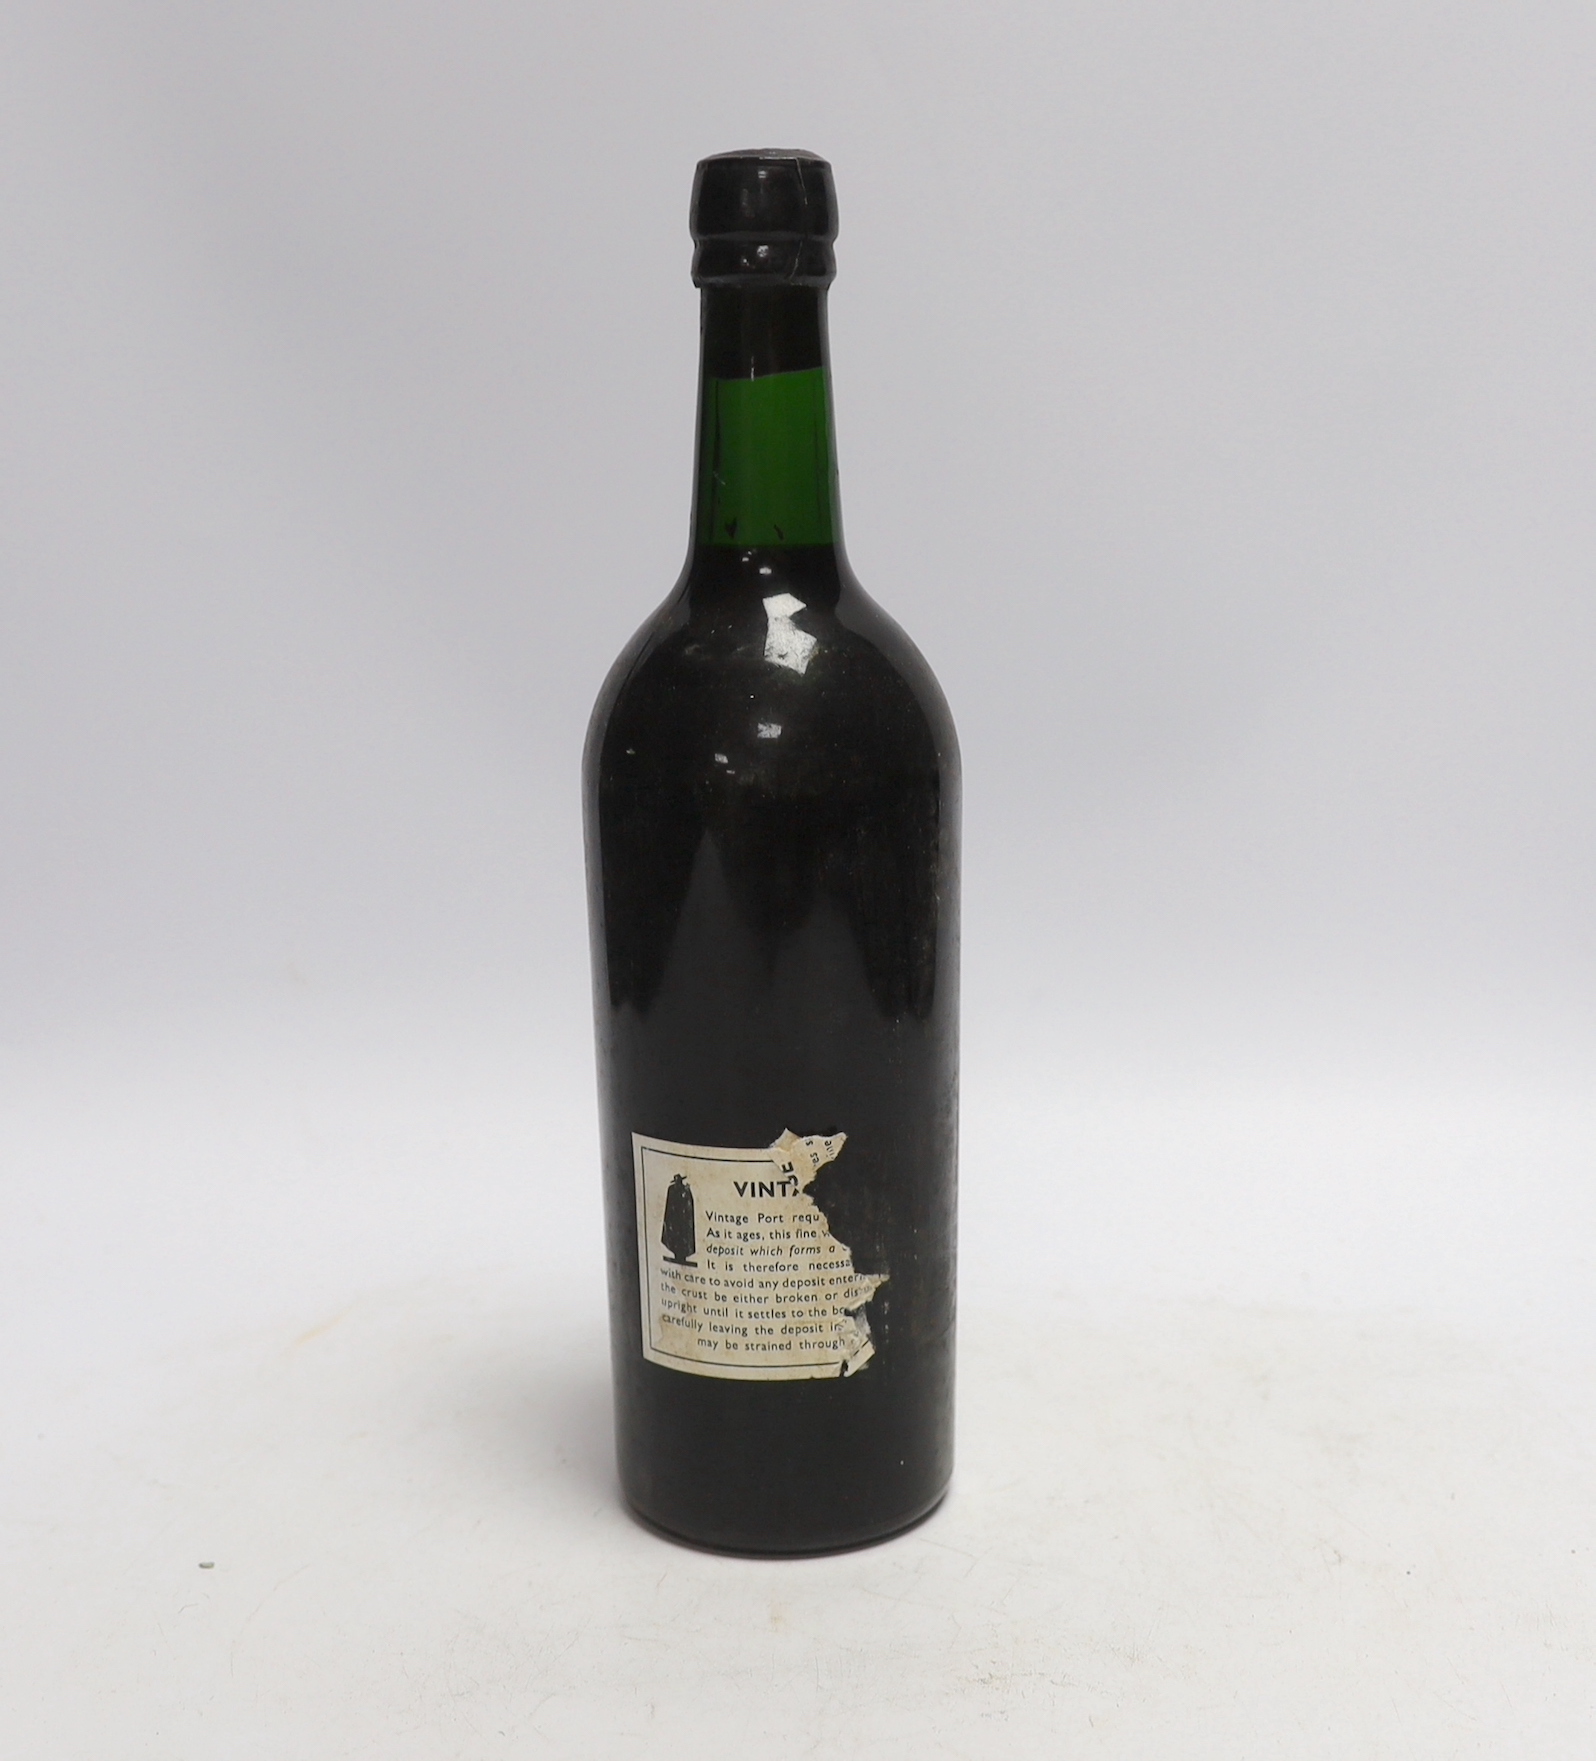 A bottle of Sandemans 1967 vintage port